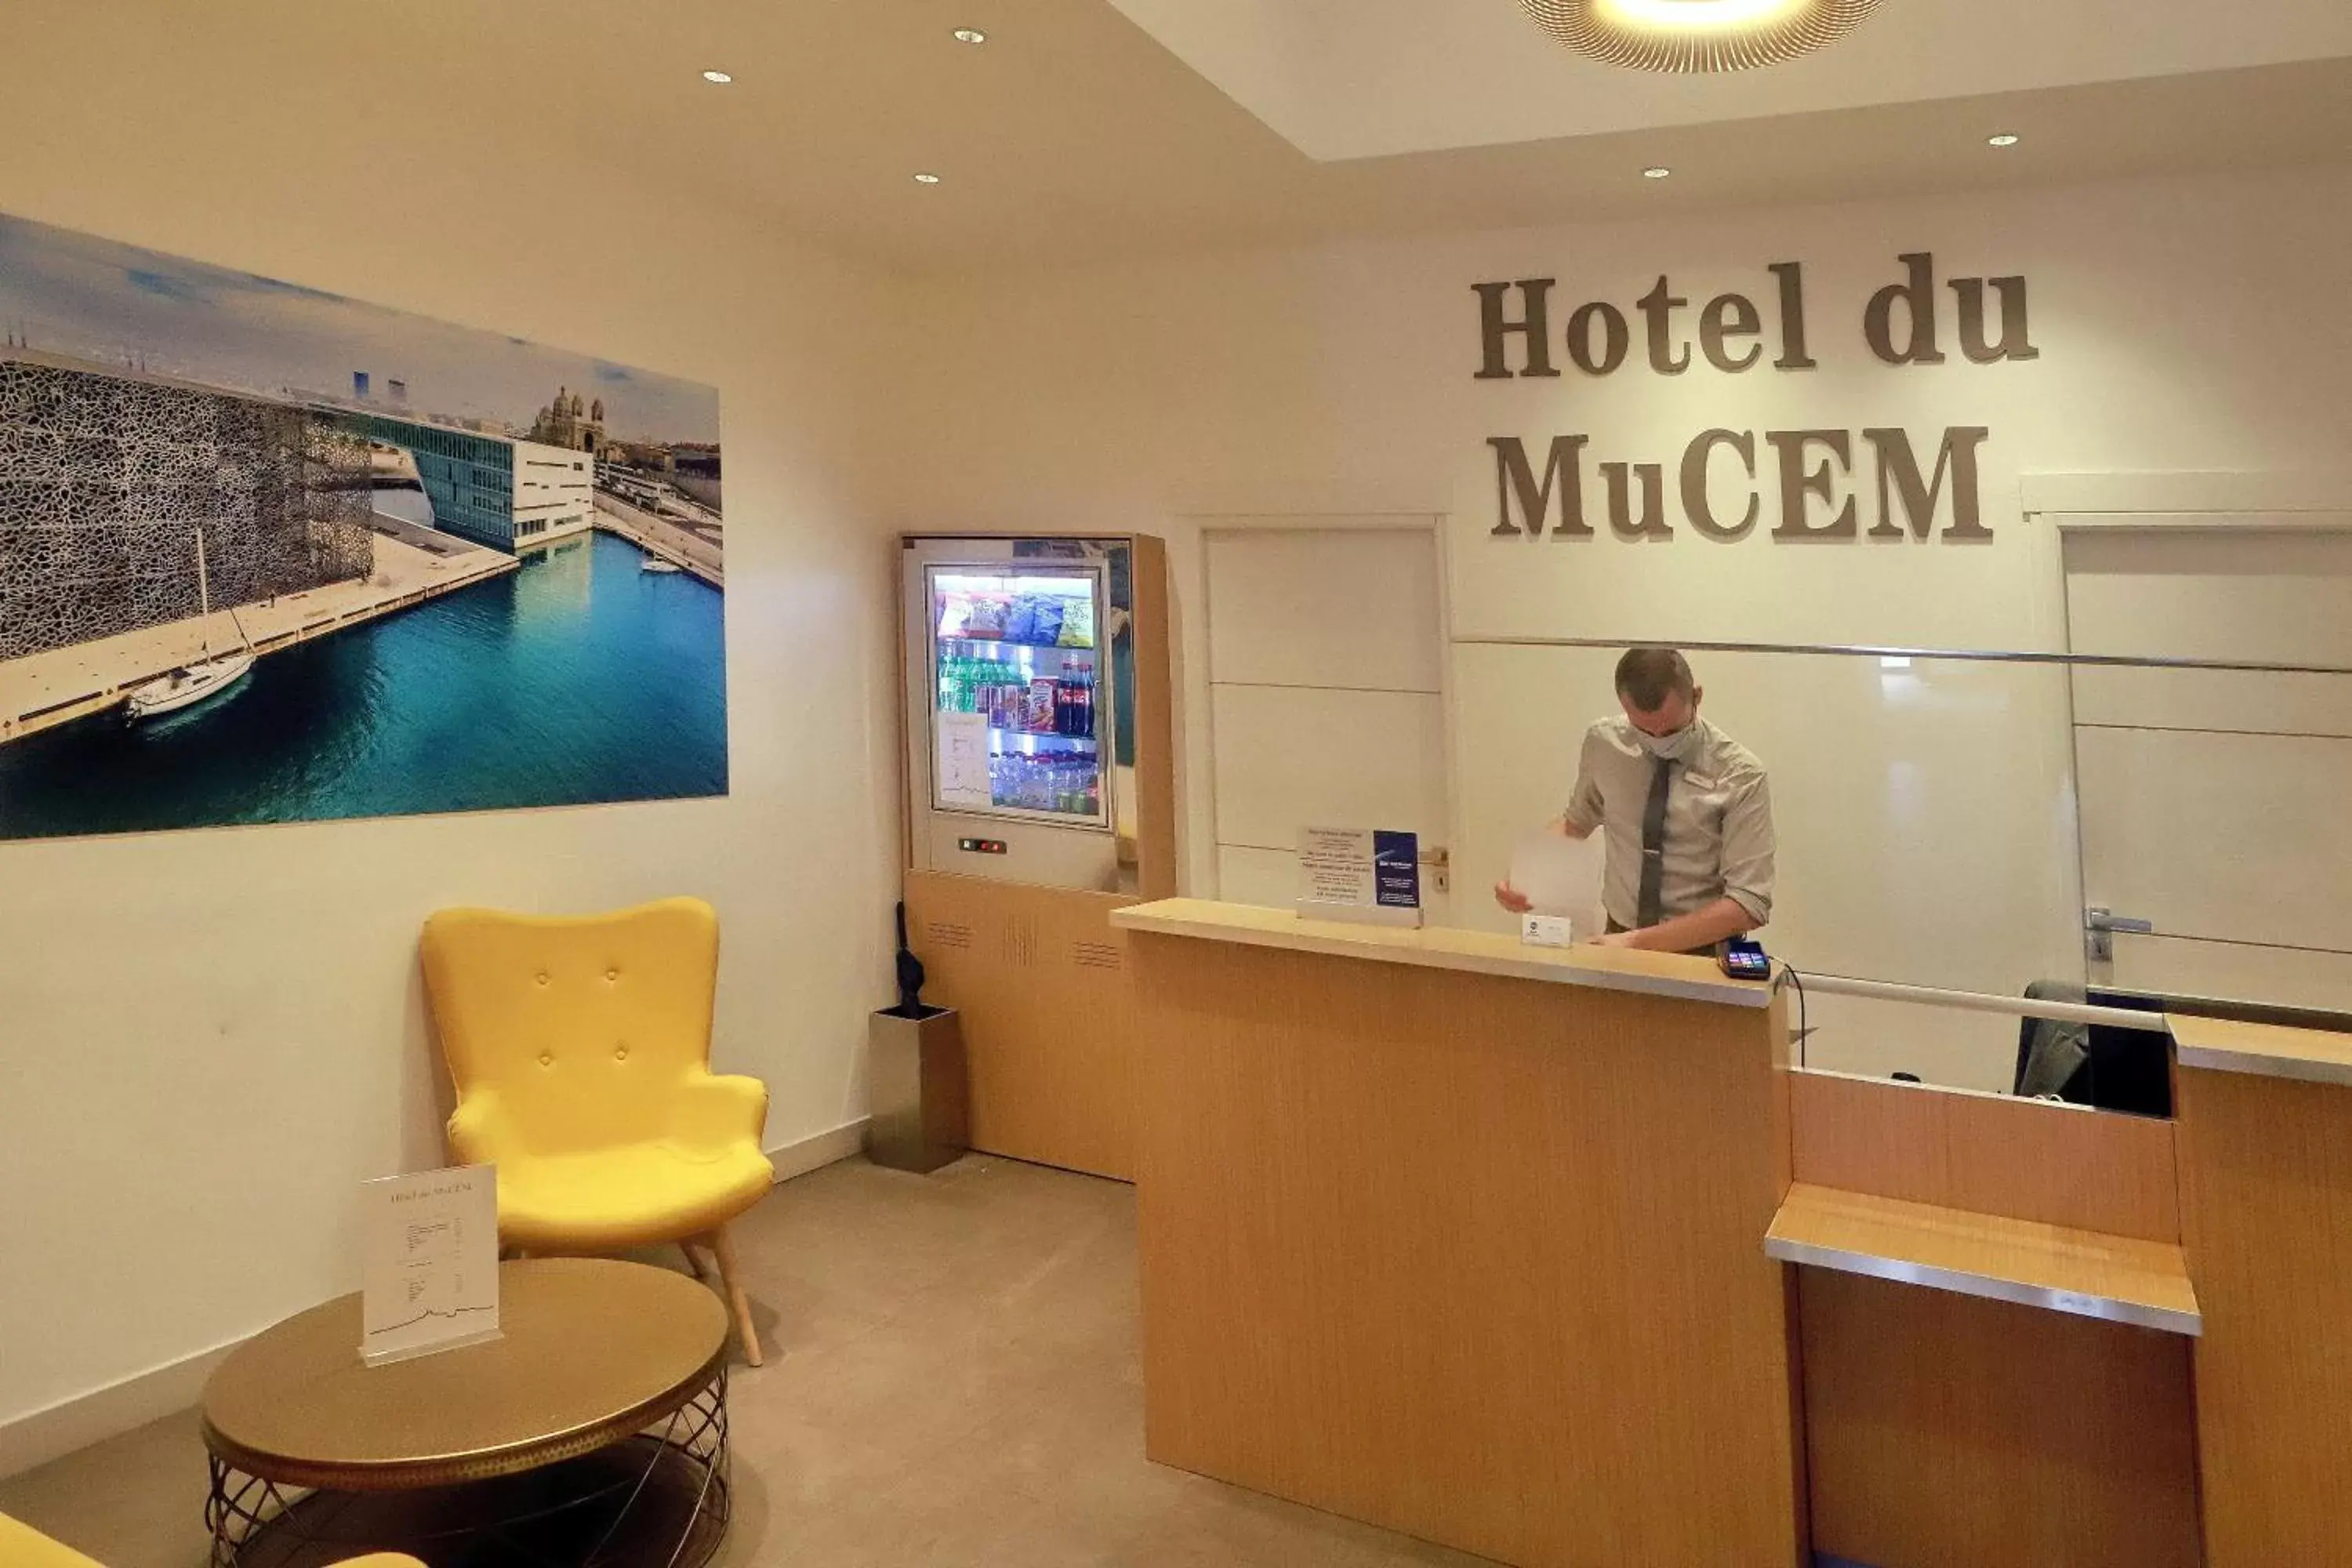 Lobby or reception, Lobby/Reception in Best Western Hotel du Mucem